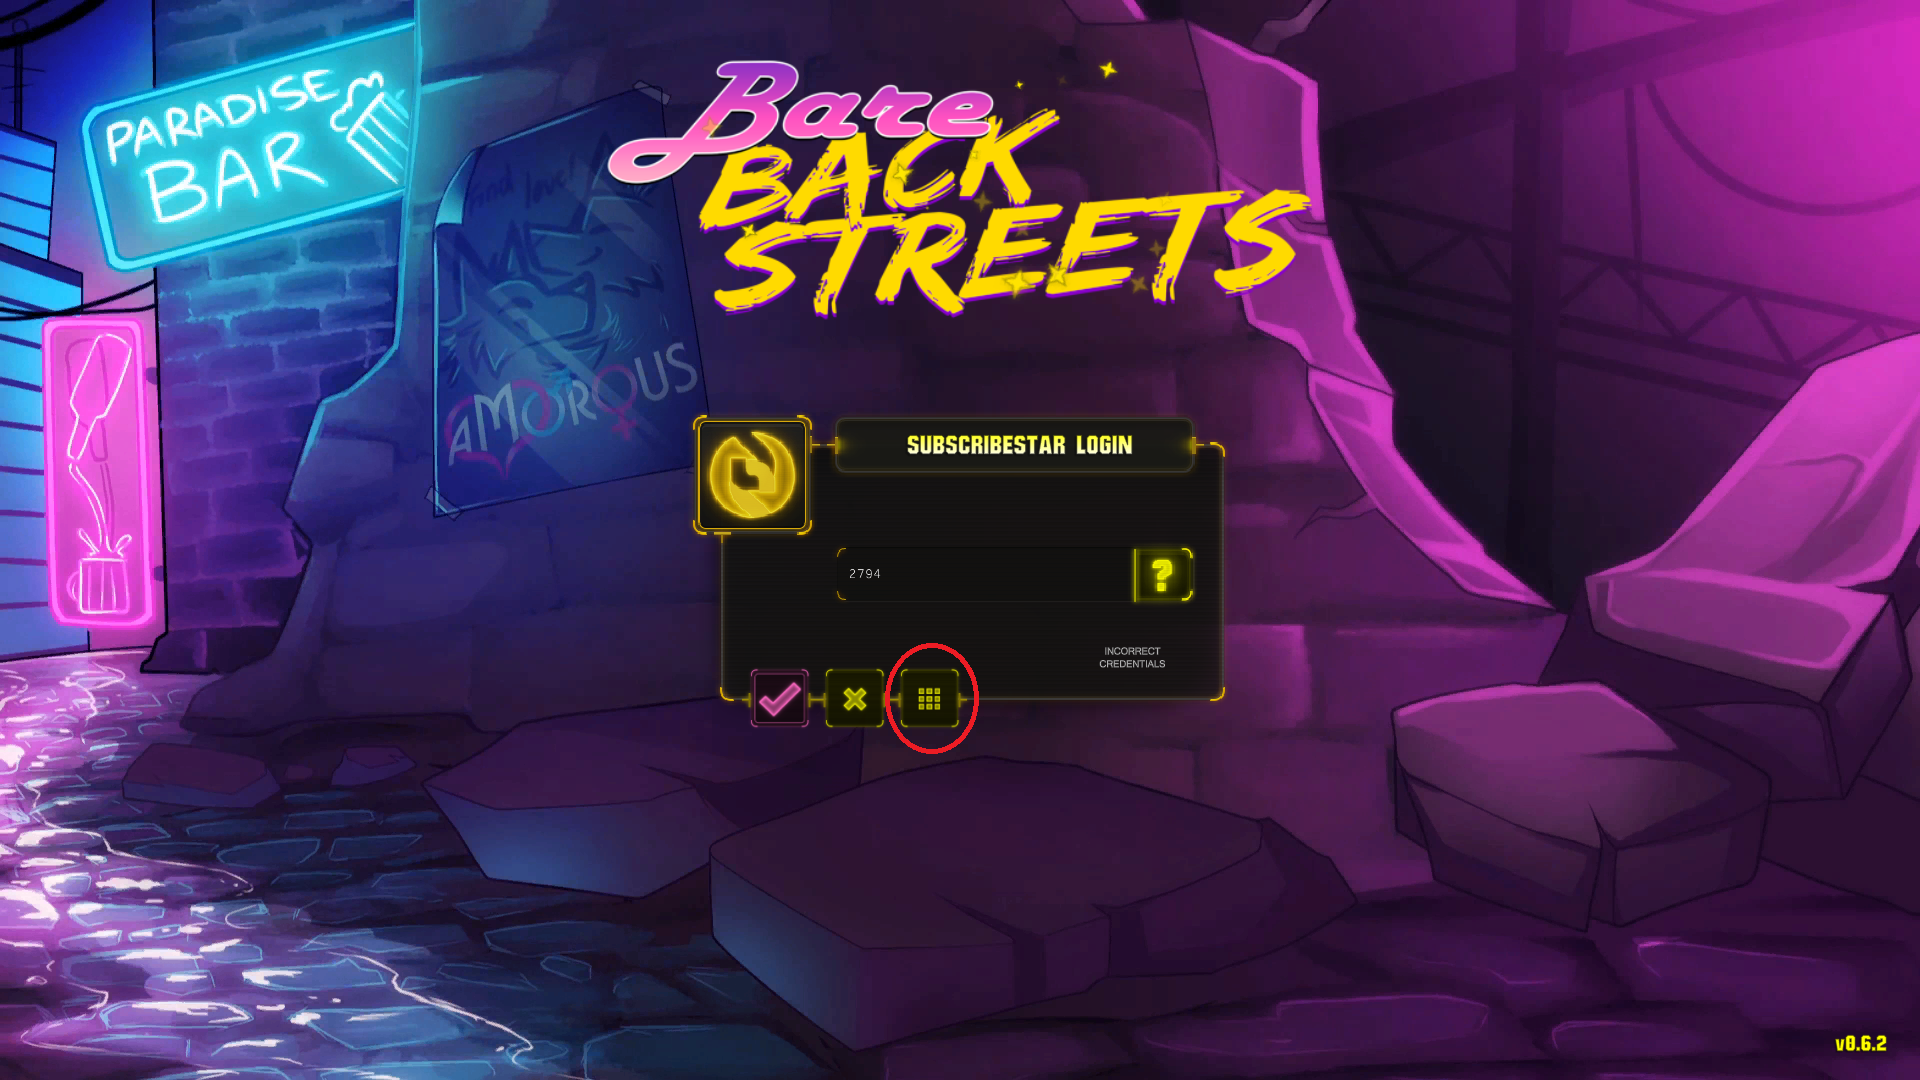 Bare backstreets code